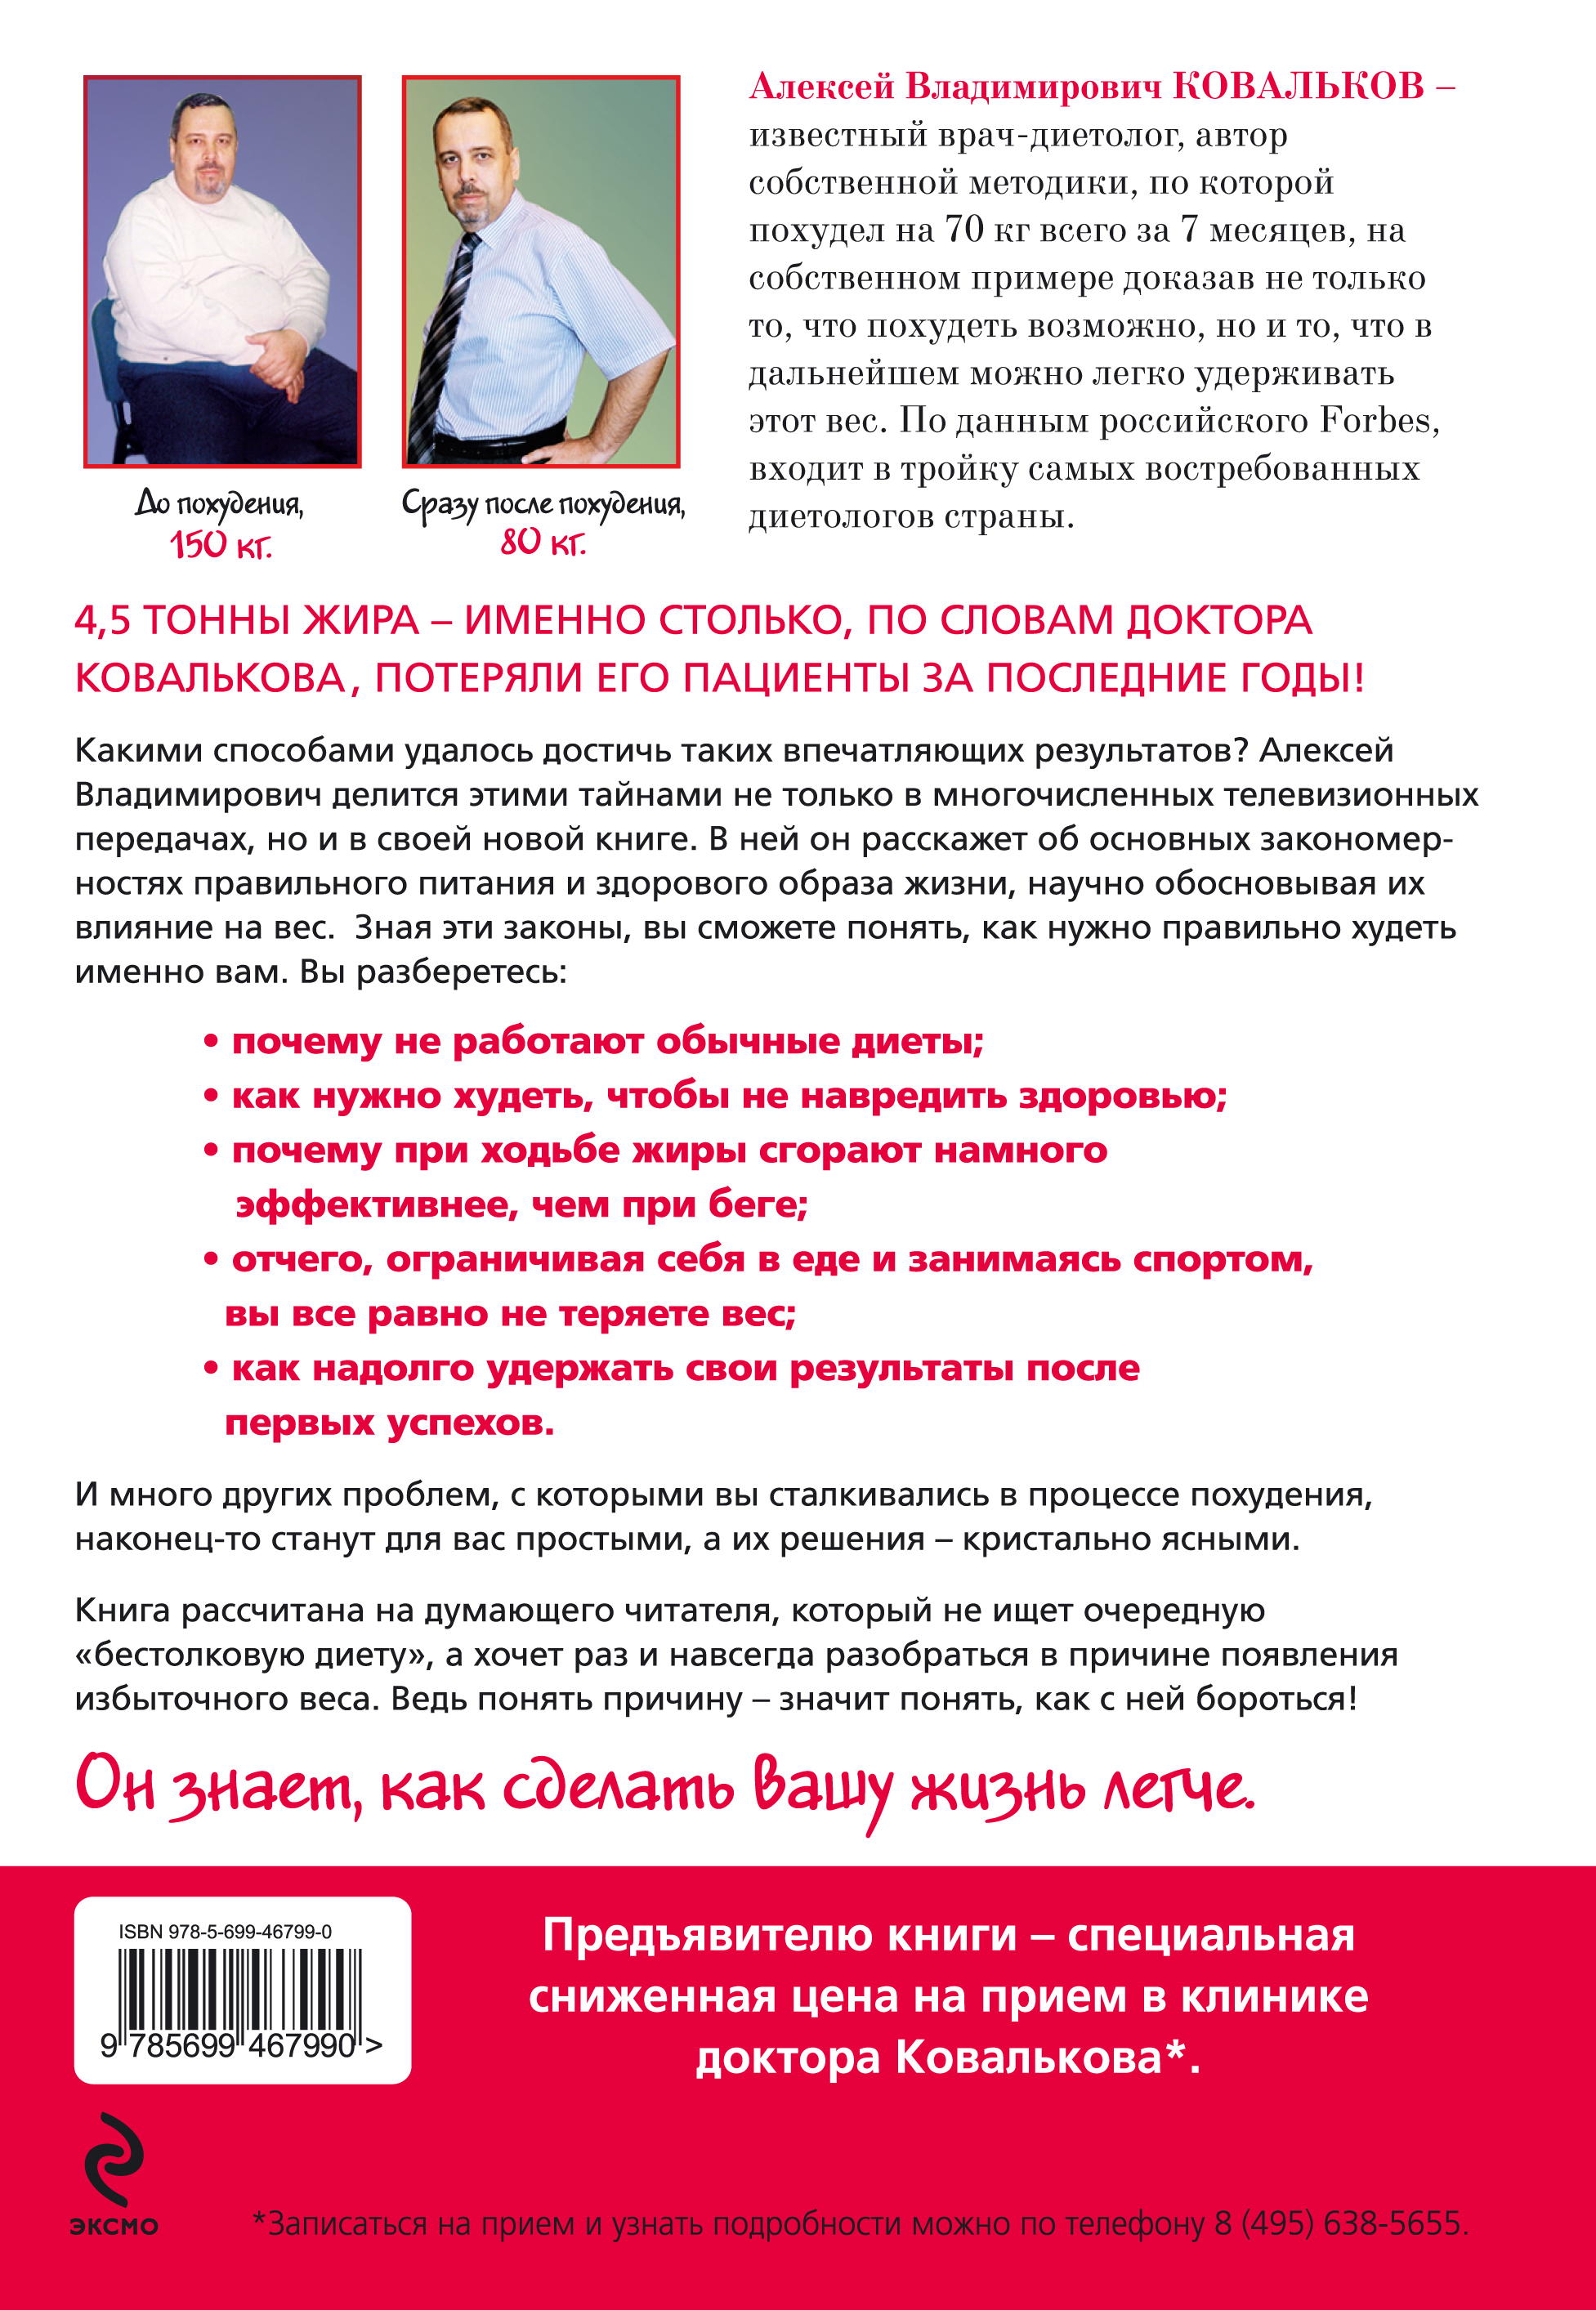 Диета Доктор Ковальков Официальный Сайт